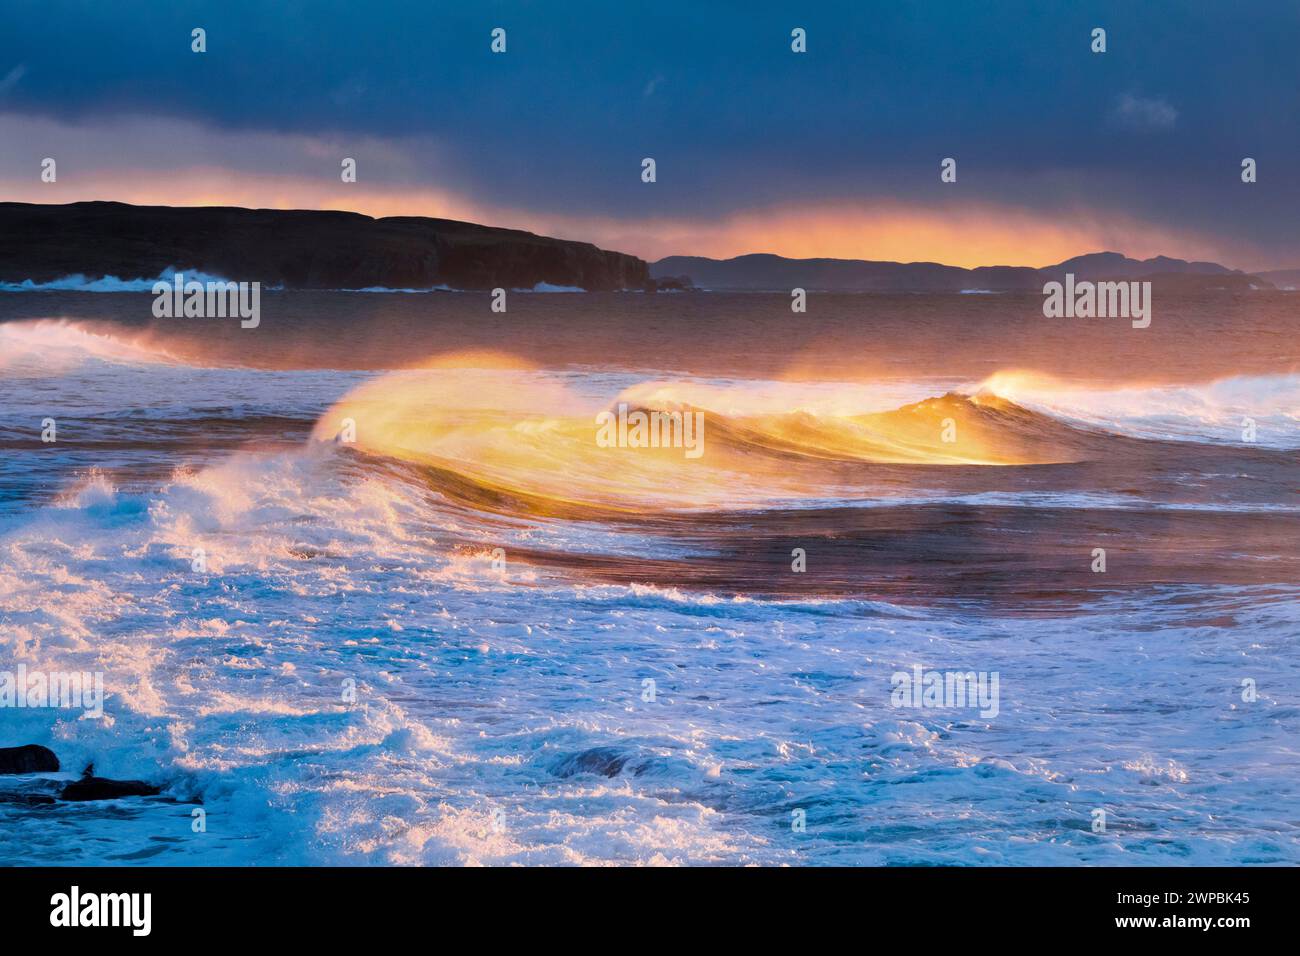 Grandi onde che si infrangono in una tempesta invernale, spruzzi vorticosi illuminati dalla calda luce del sole della sera, isole estive sullo sfondo, Regno Unito, Foto Stock